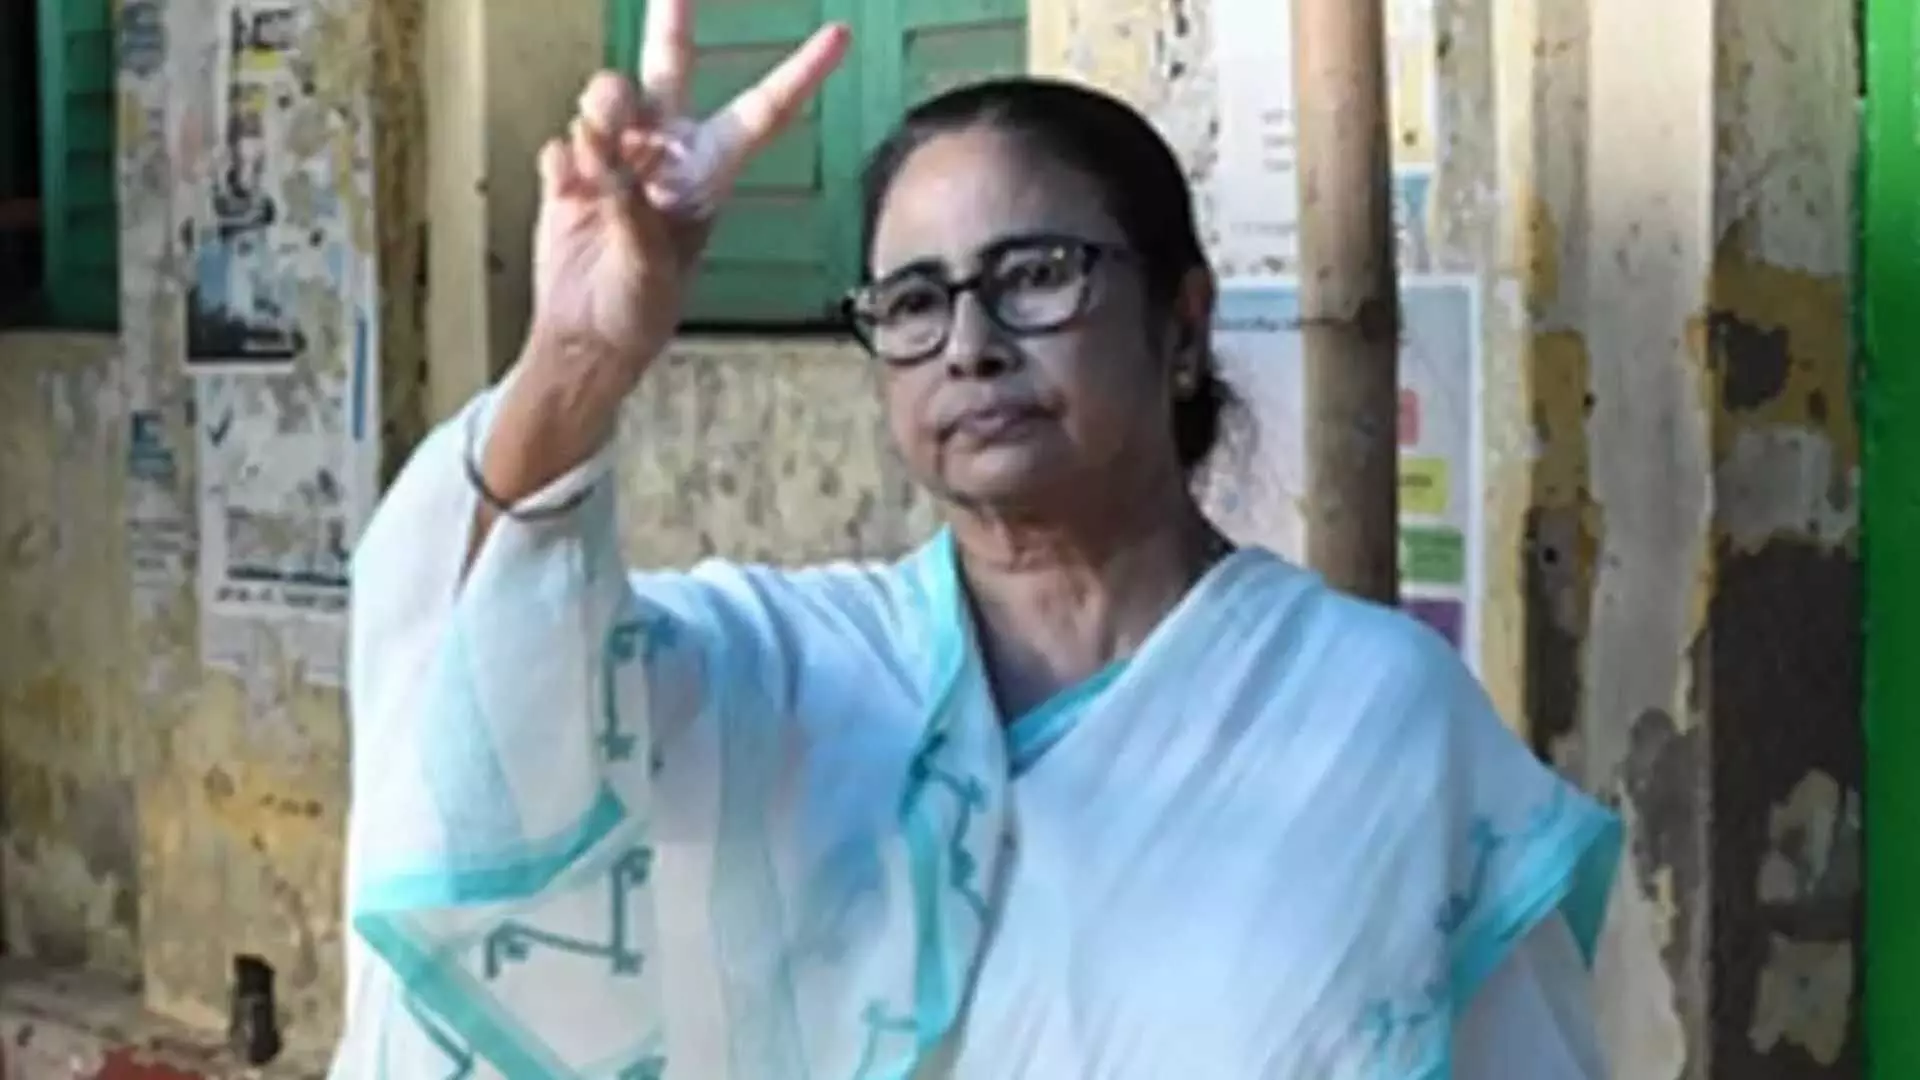 Bengal : भारत के लोगों ने भाजपा की कमर तोड़ी : ममता बनर्जी